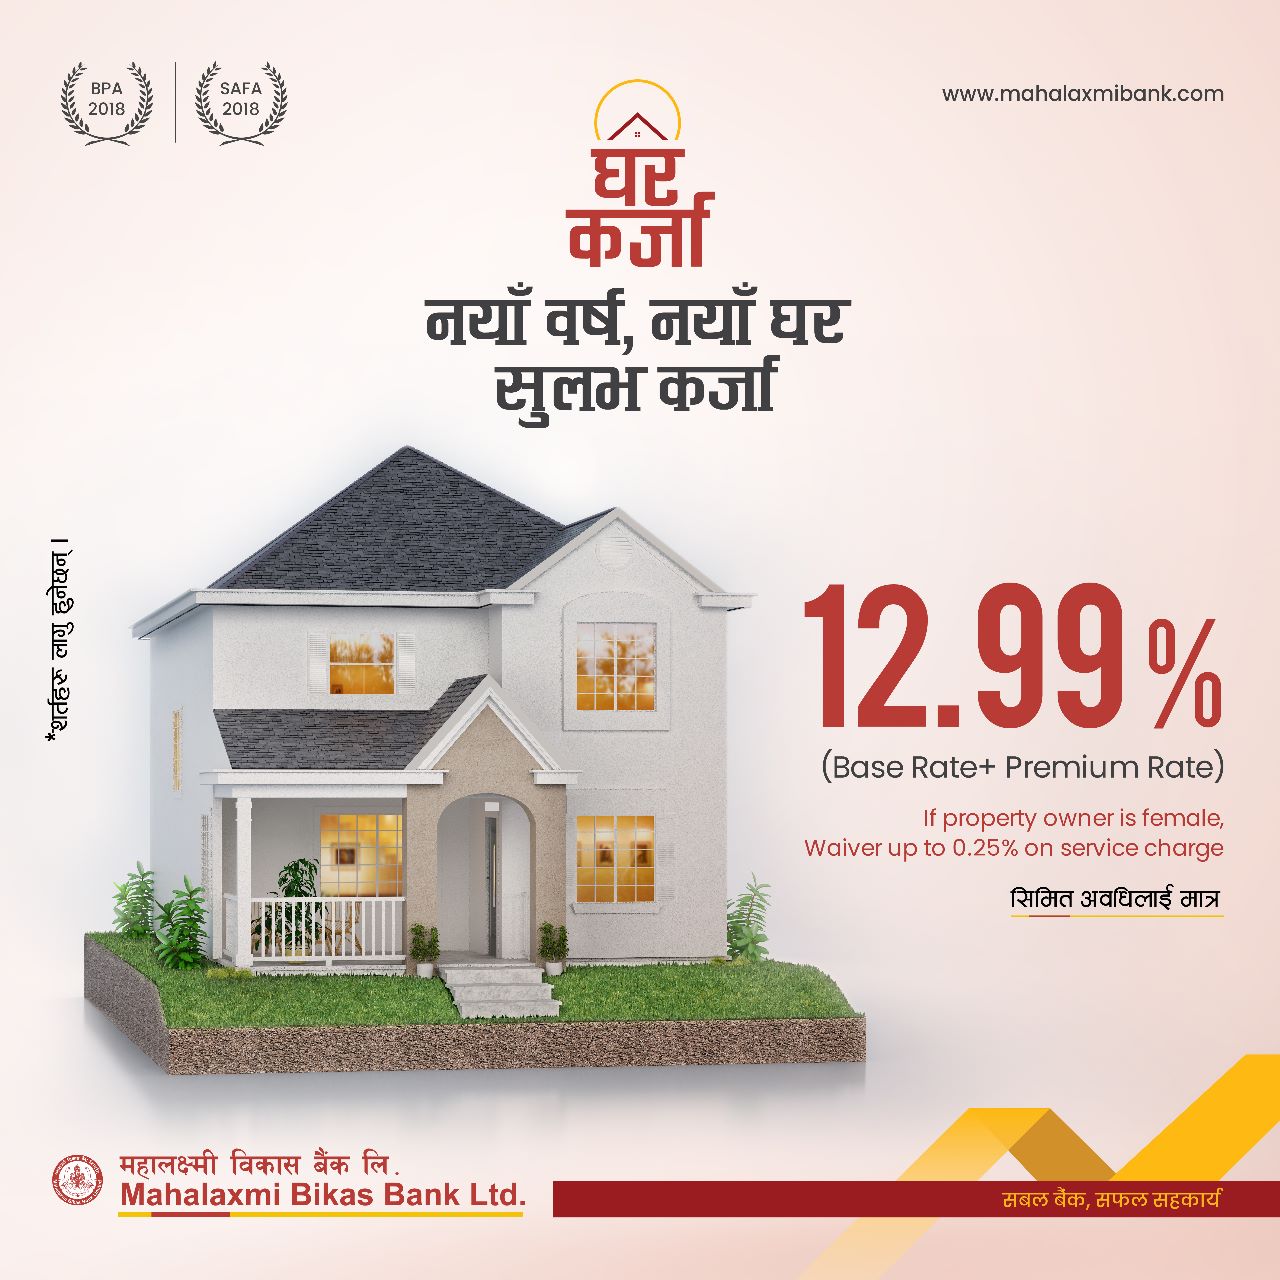 महालक्ष्मी विकास बैंकले ल्यायो १२.९९ प्रतिशत ब्याजदरमा आवास र व्यवसायिक कर्जा